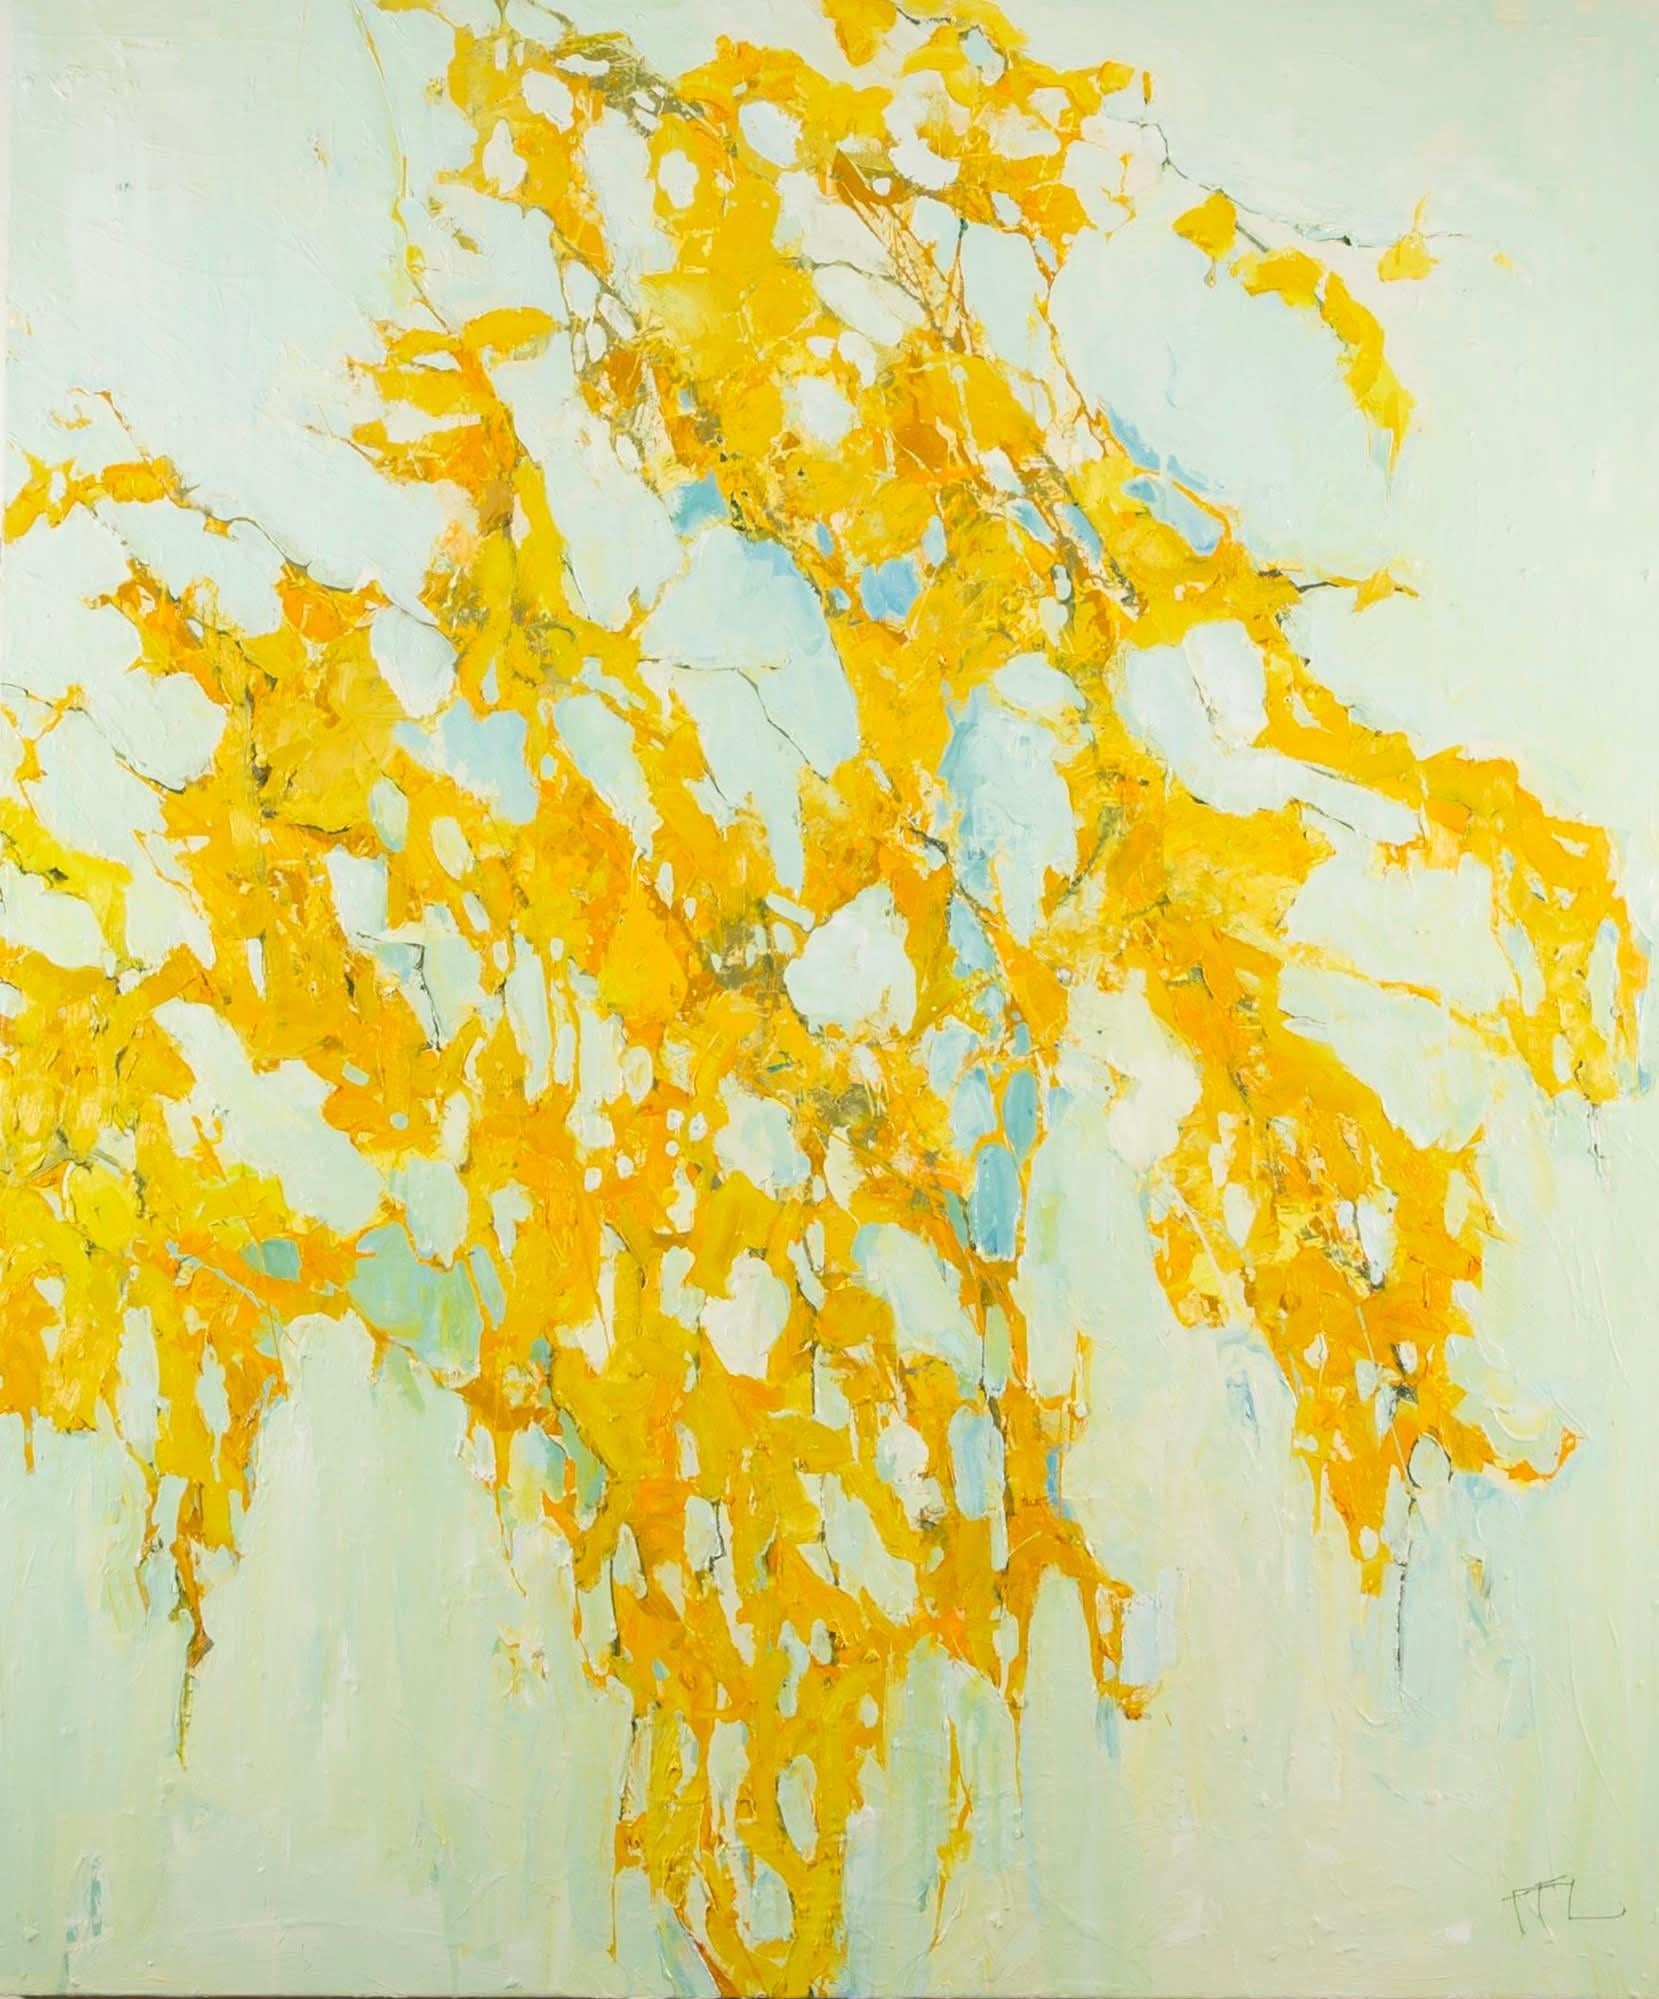 Garden, Cadmium Orange, Oil on Canvas Painting by Ffiona Lewis, 2020 - Art by Unknown